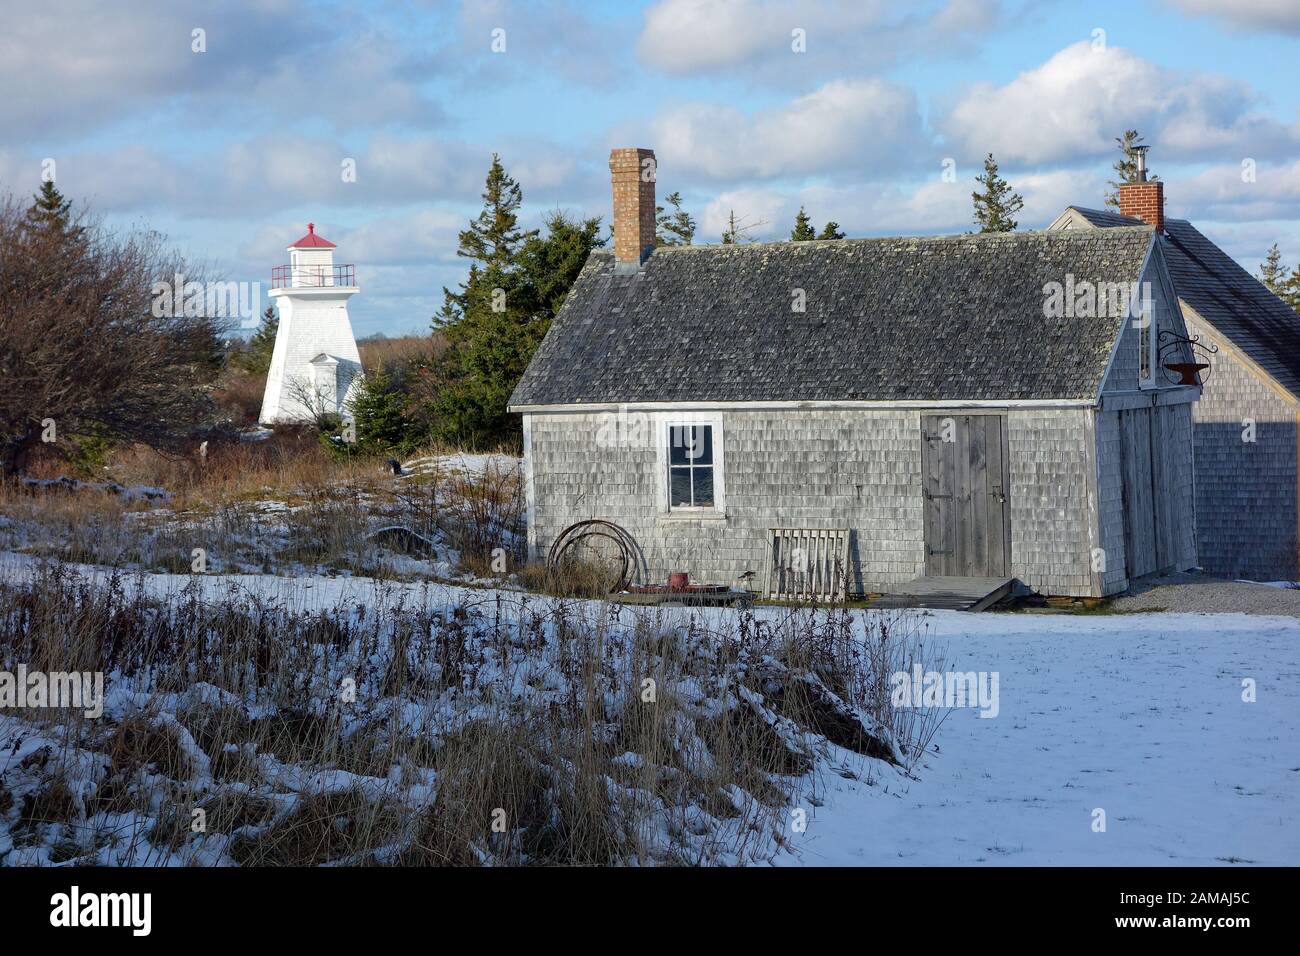 Acadian village, Pubnico, Nova Scotia, Canada. The Historic Acadian Village of Nova Scotia is located in Lower West Pubnico, Nova Scotia, on a breatht Stock Photo